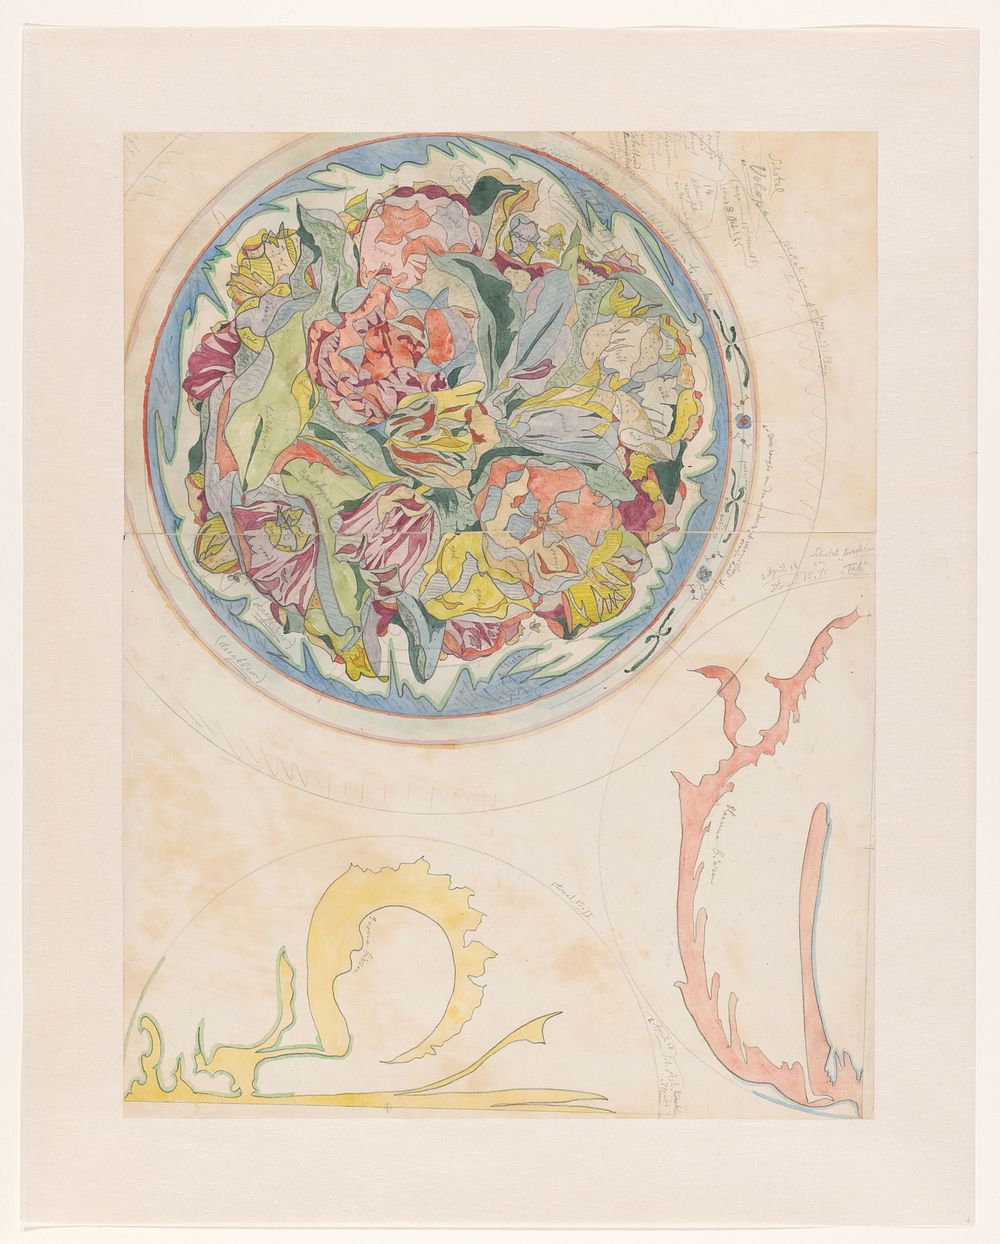 Drie ontwerpen voor aardewerkdecoratie voor schotel (1918) by Theo Colenbrander